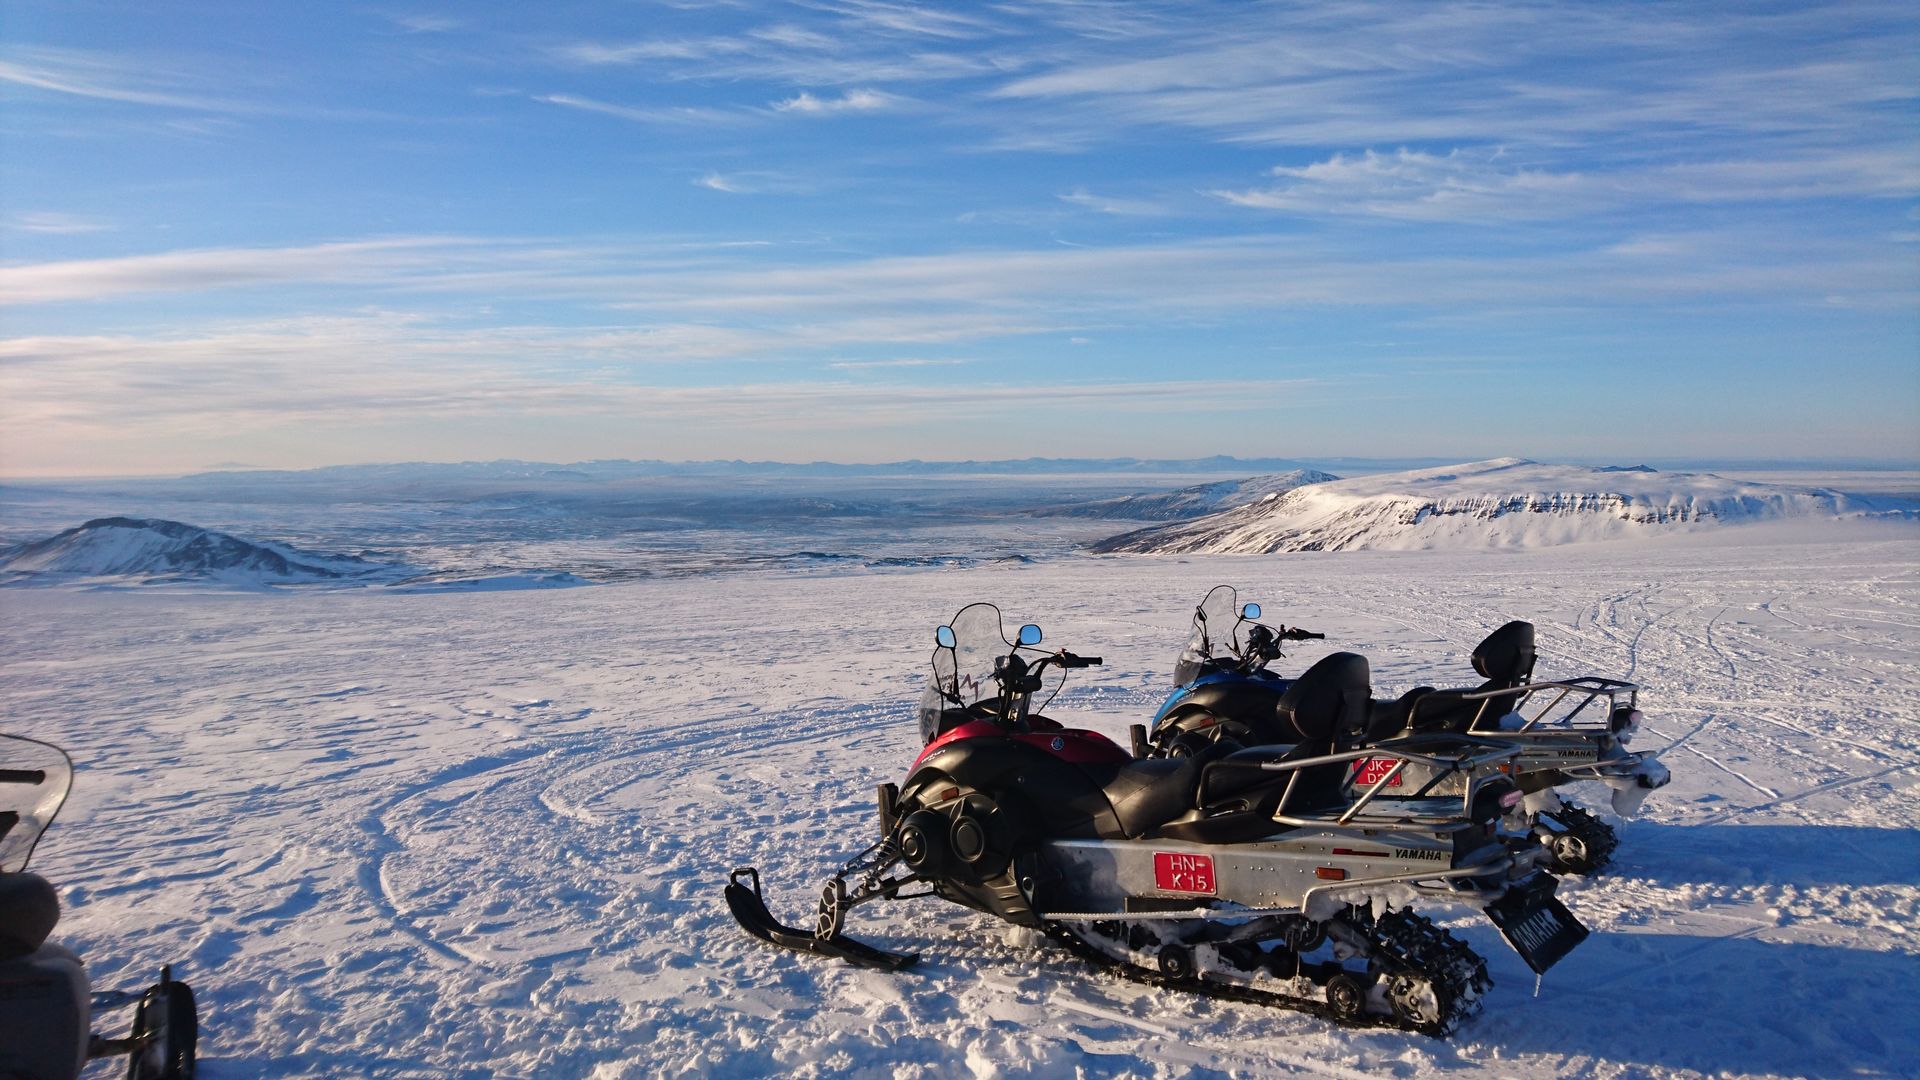 Langjokull snowmobile tour, Iceland